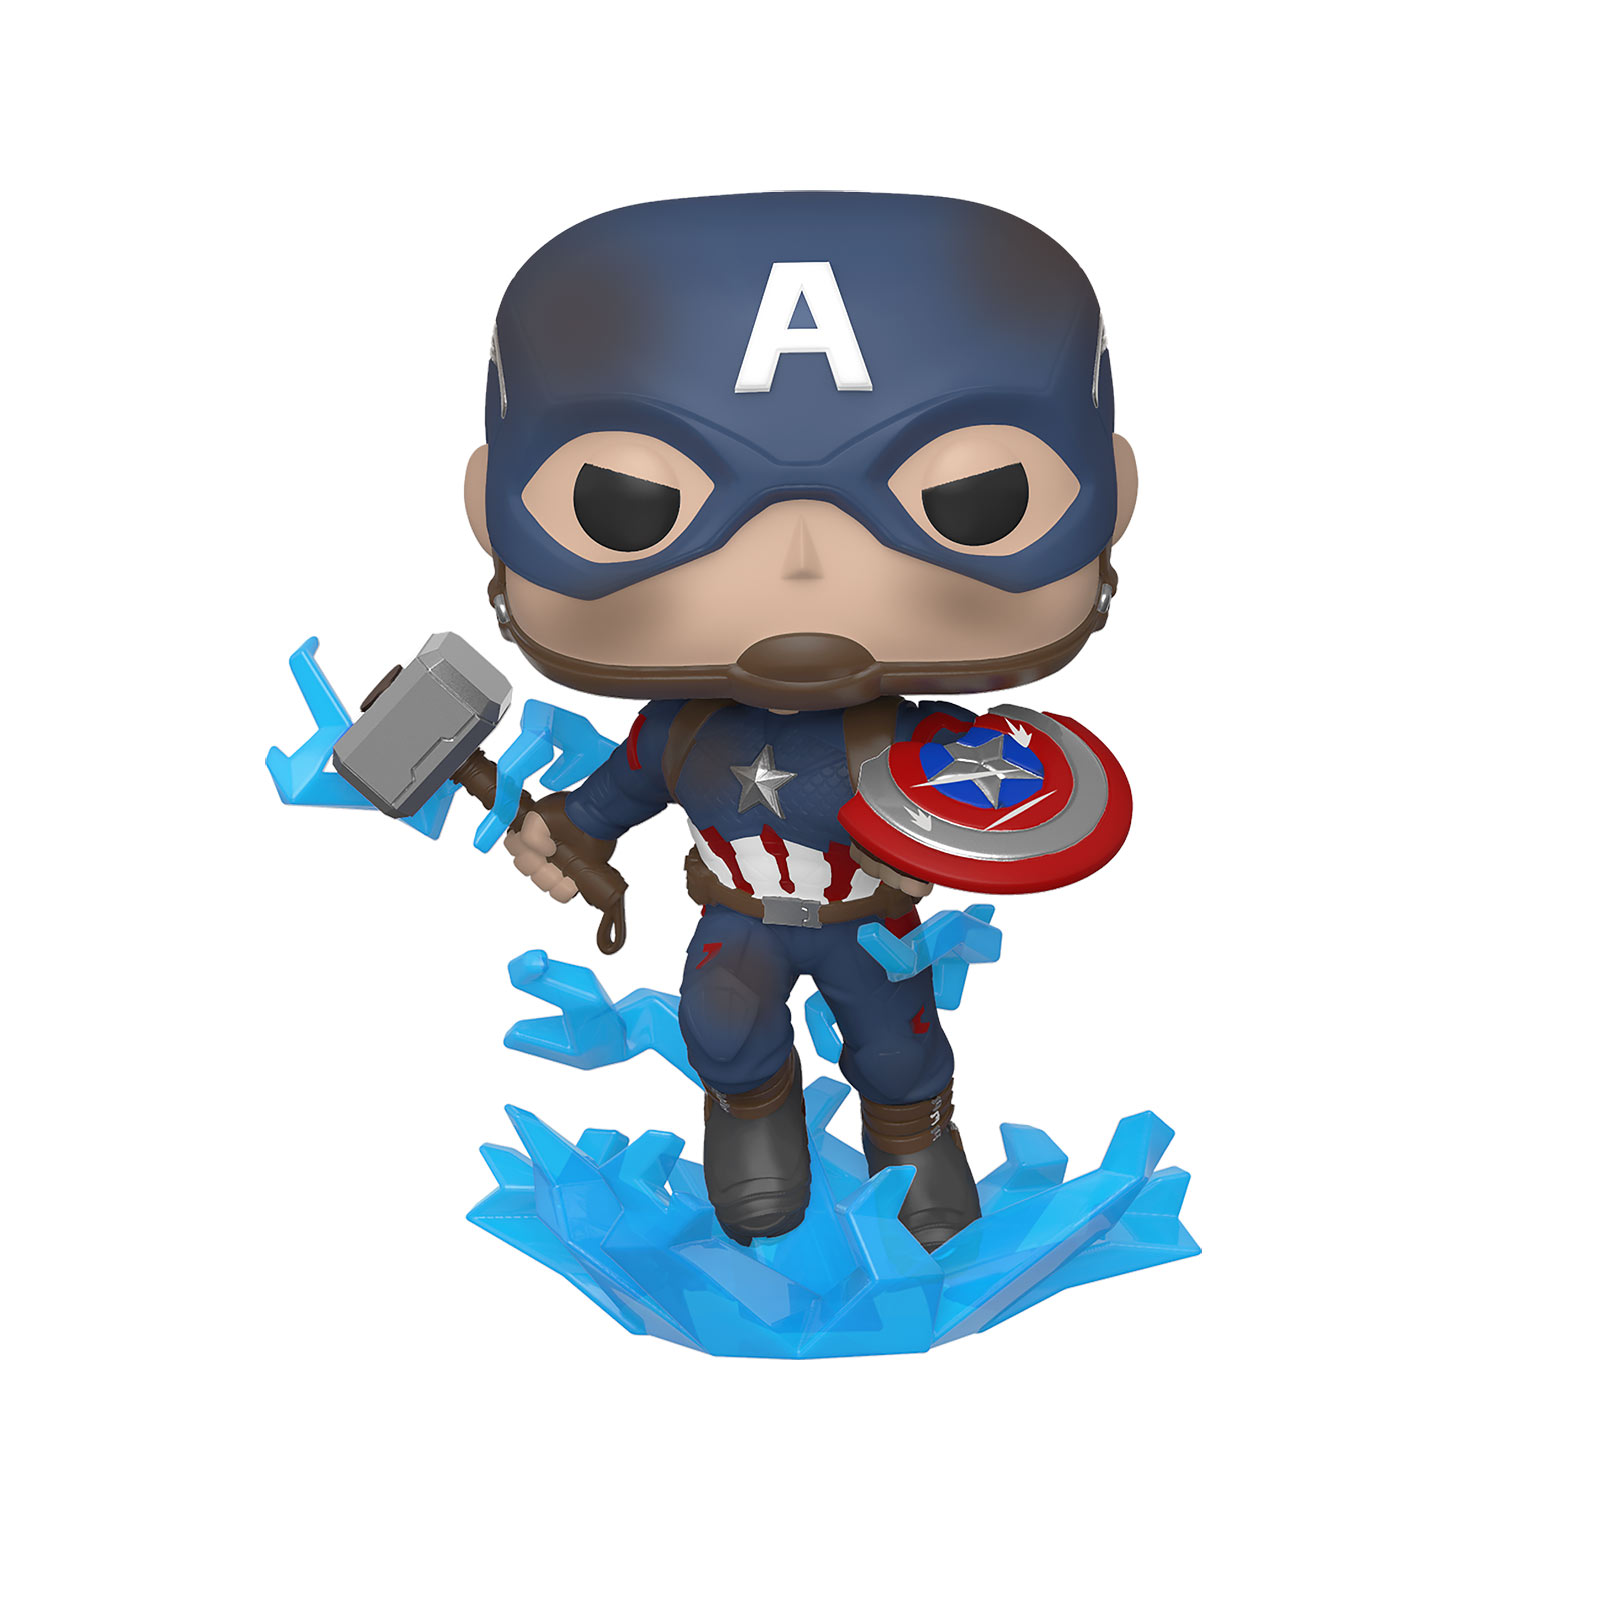 Avengers - Captain America Mjölnir & Broken Shield Endgame Funko Pop Bobblehead Figure